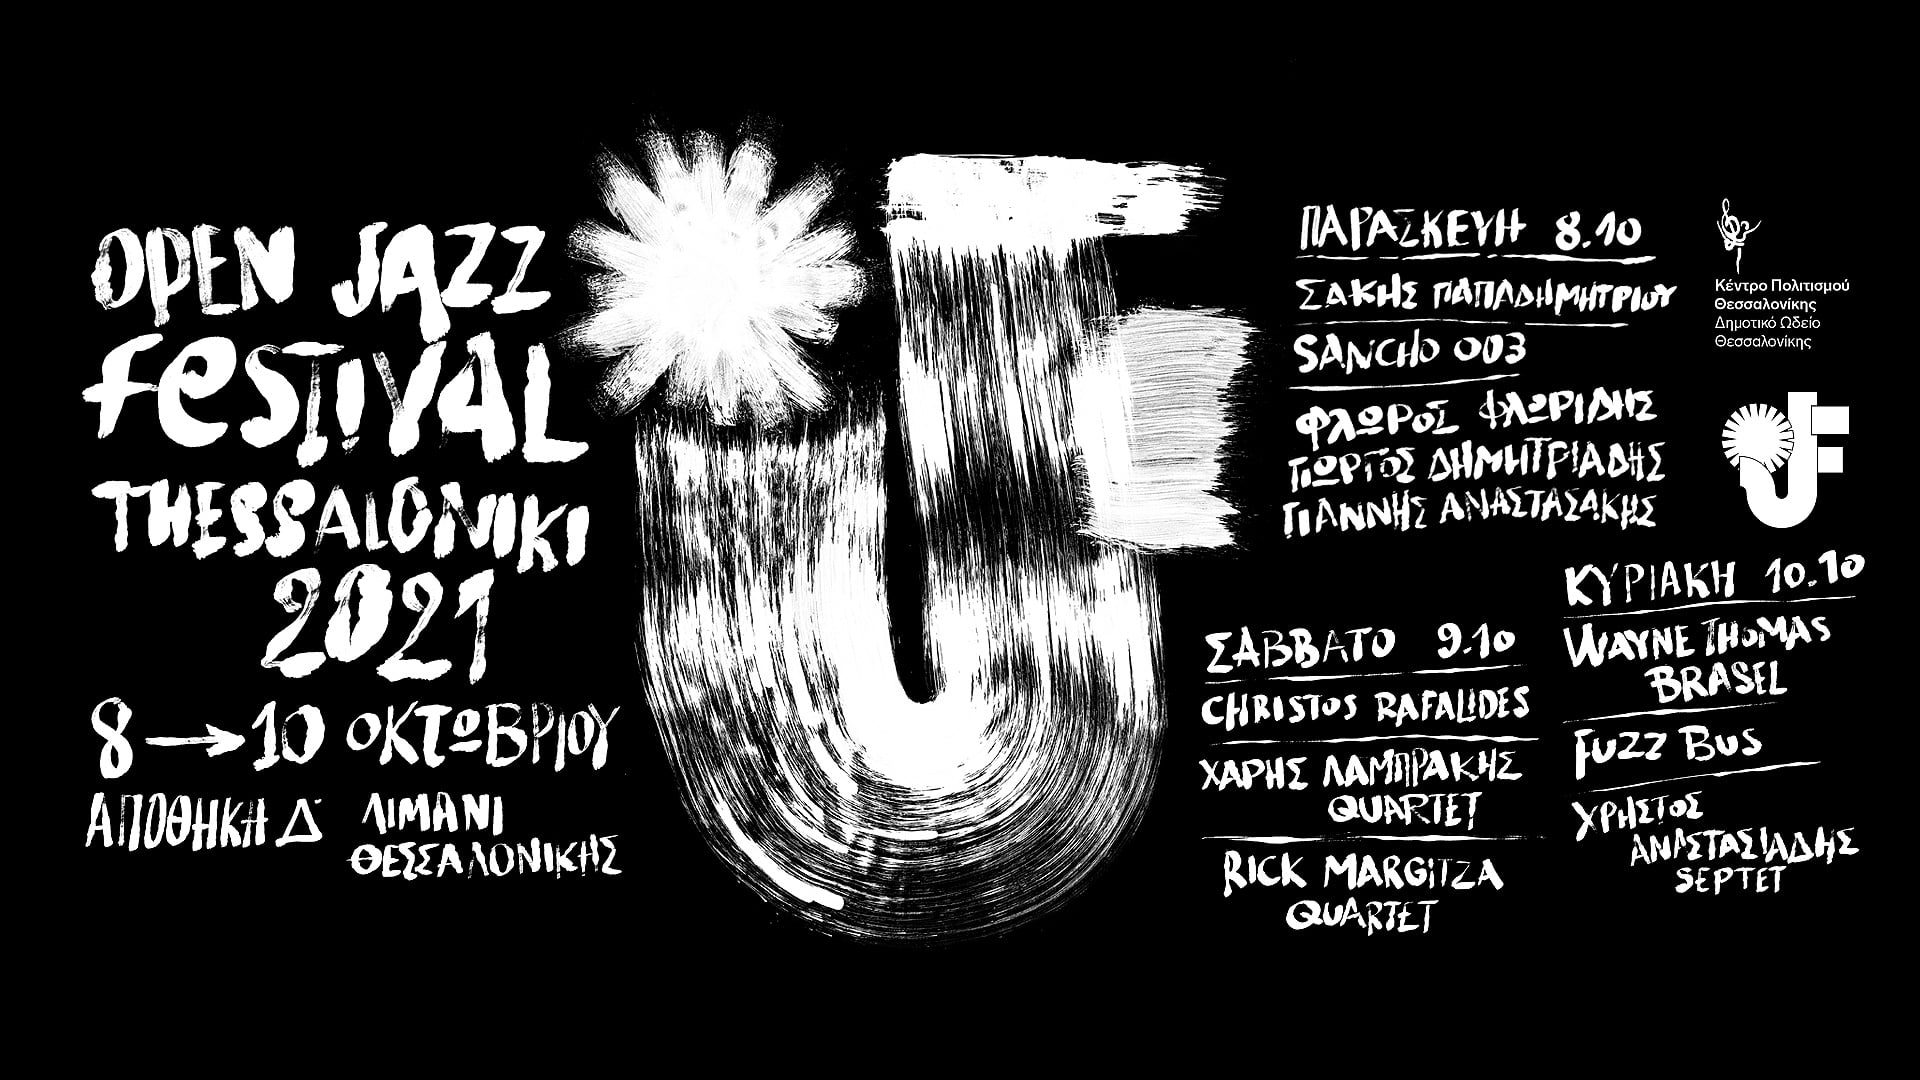 Open Jazz Festival 2021